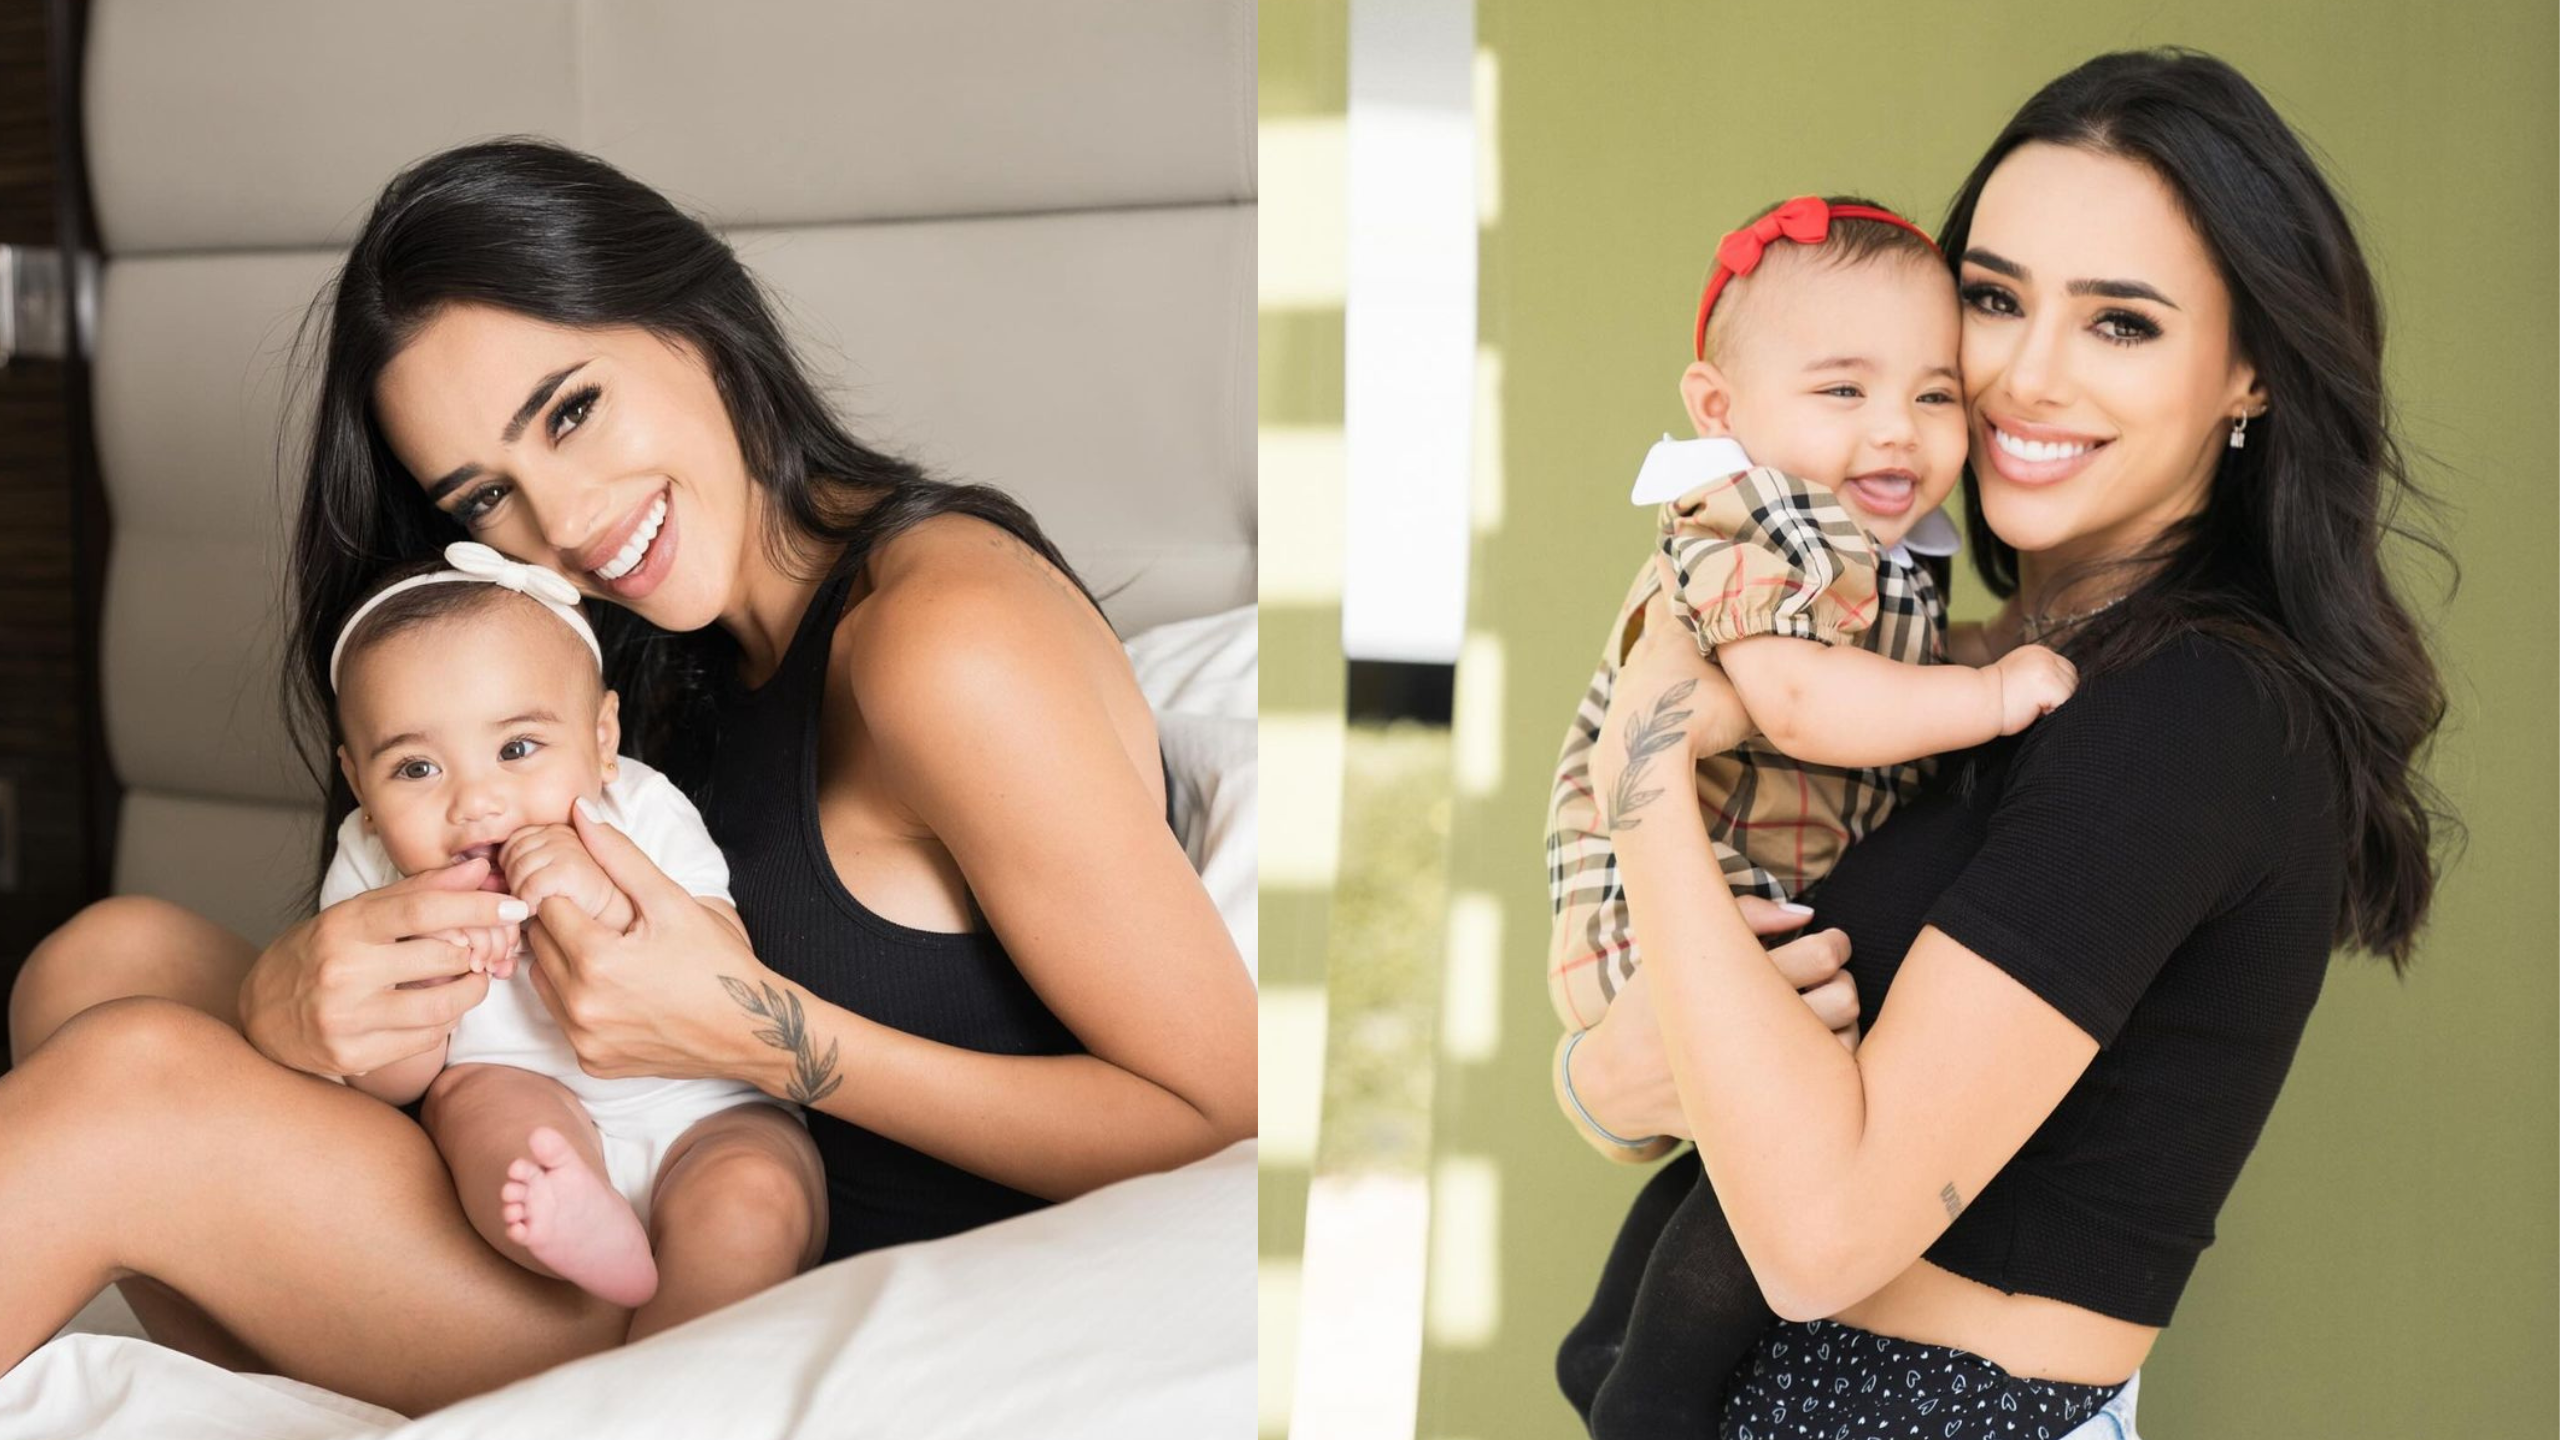 Em entrevista exclusiva, Bruna Biancardi compartilhou os desafios da maternidade e os cuidados com sua filha Mavie